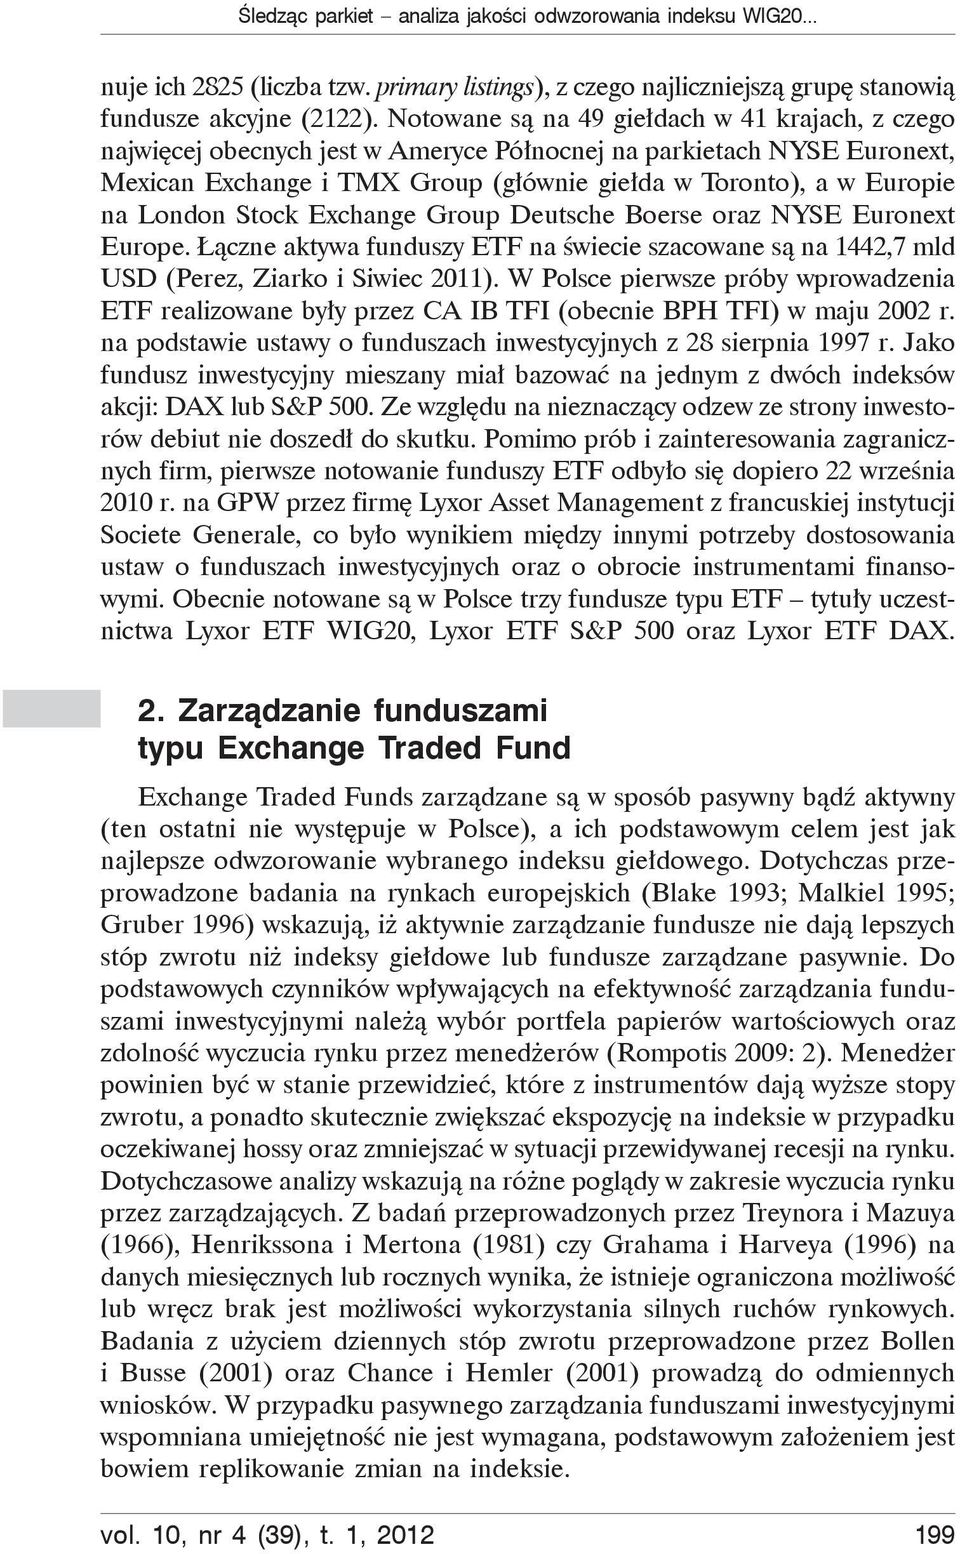 Stock Exchange Group Deutsche Boerse oraz NYSE Euronext Europe. czne aktywa funduszy ETF na wiecie szacowane s na 1442,7 mld USD (Perez, Ziarko i Siwiec 2011).